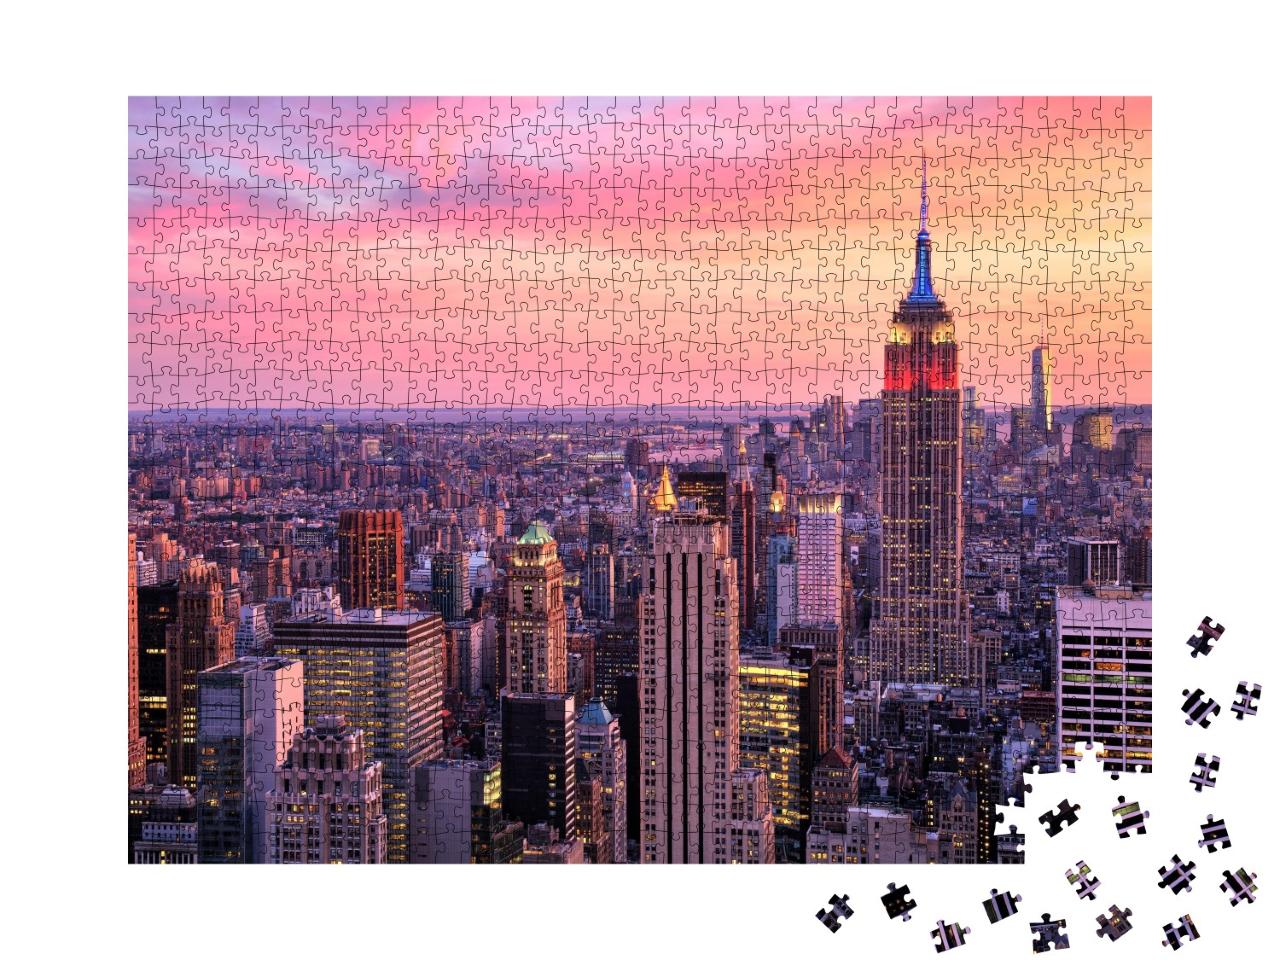 Puzzle de 1000 pièces « New York City : Midtown avec Empire State Building »